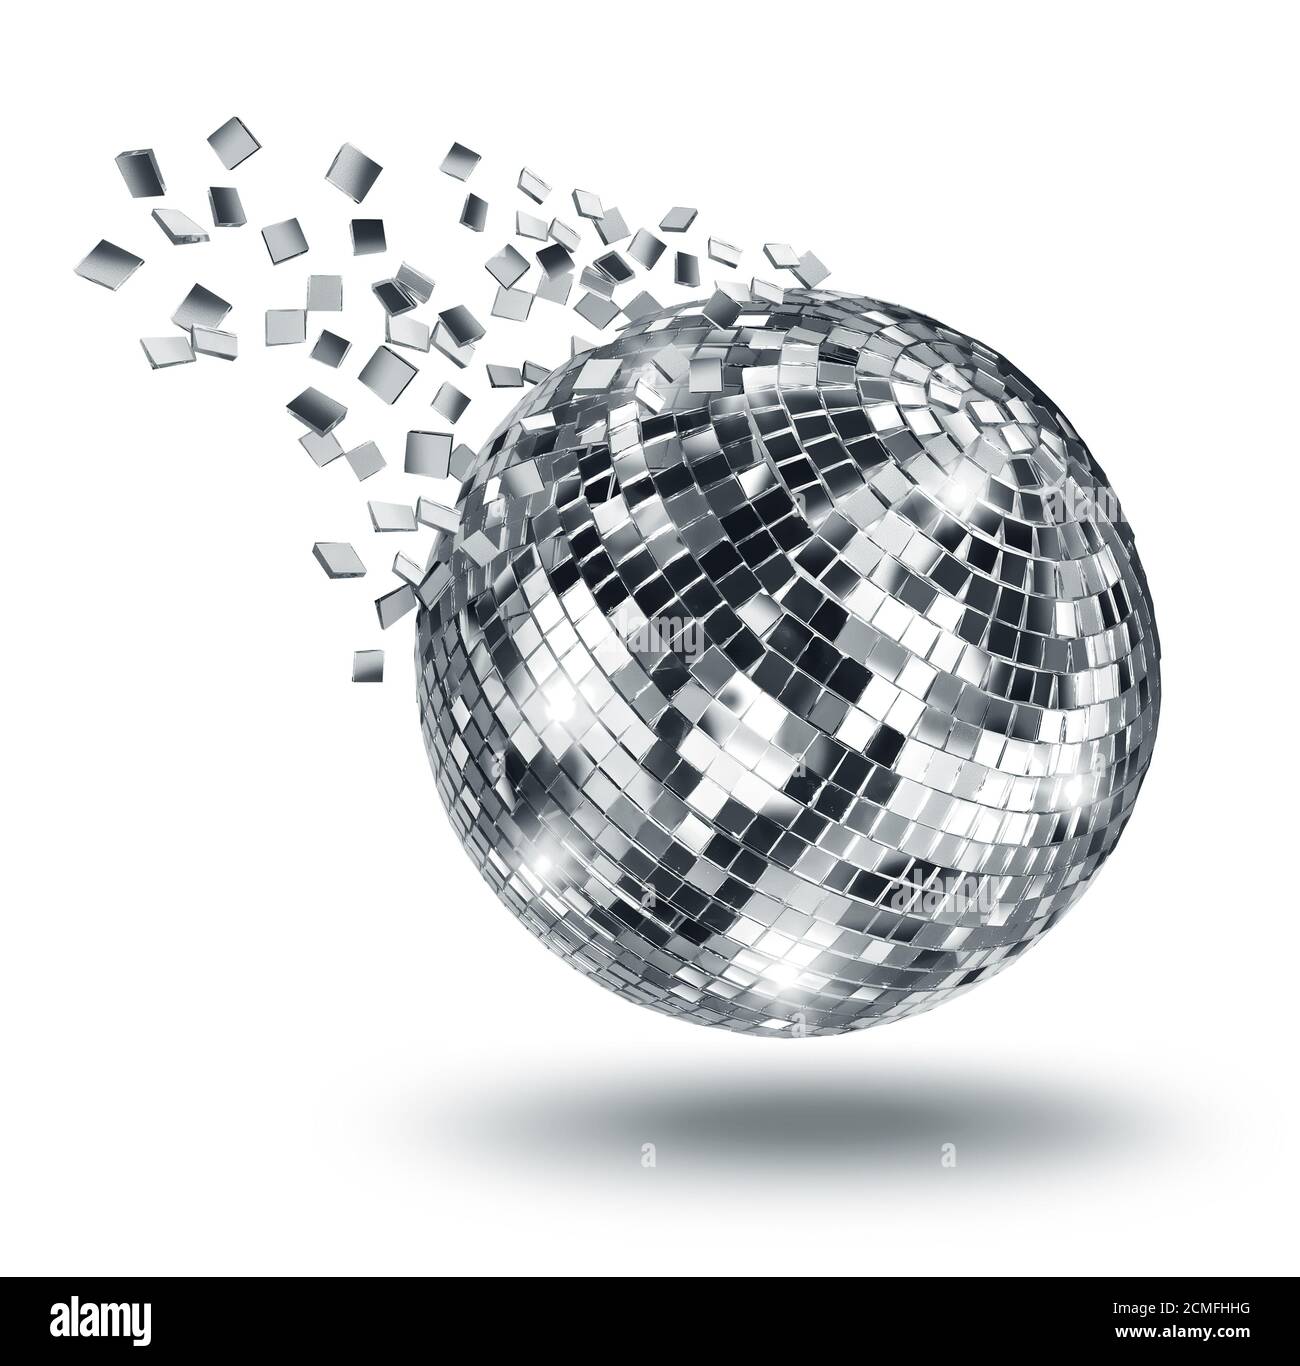 Disco-Musik-Konzept Spiegel Ball 3D-Rendering-Bild Lizenzfreie Fotos,  Bilder und Stock Fotografie. Image 75184603.